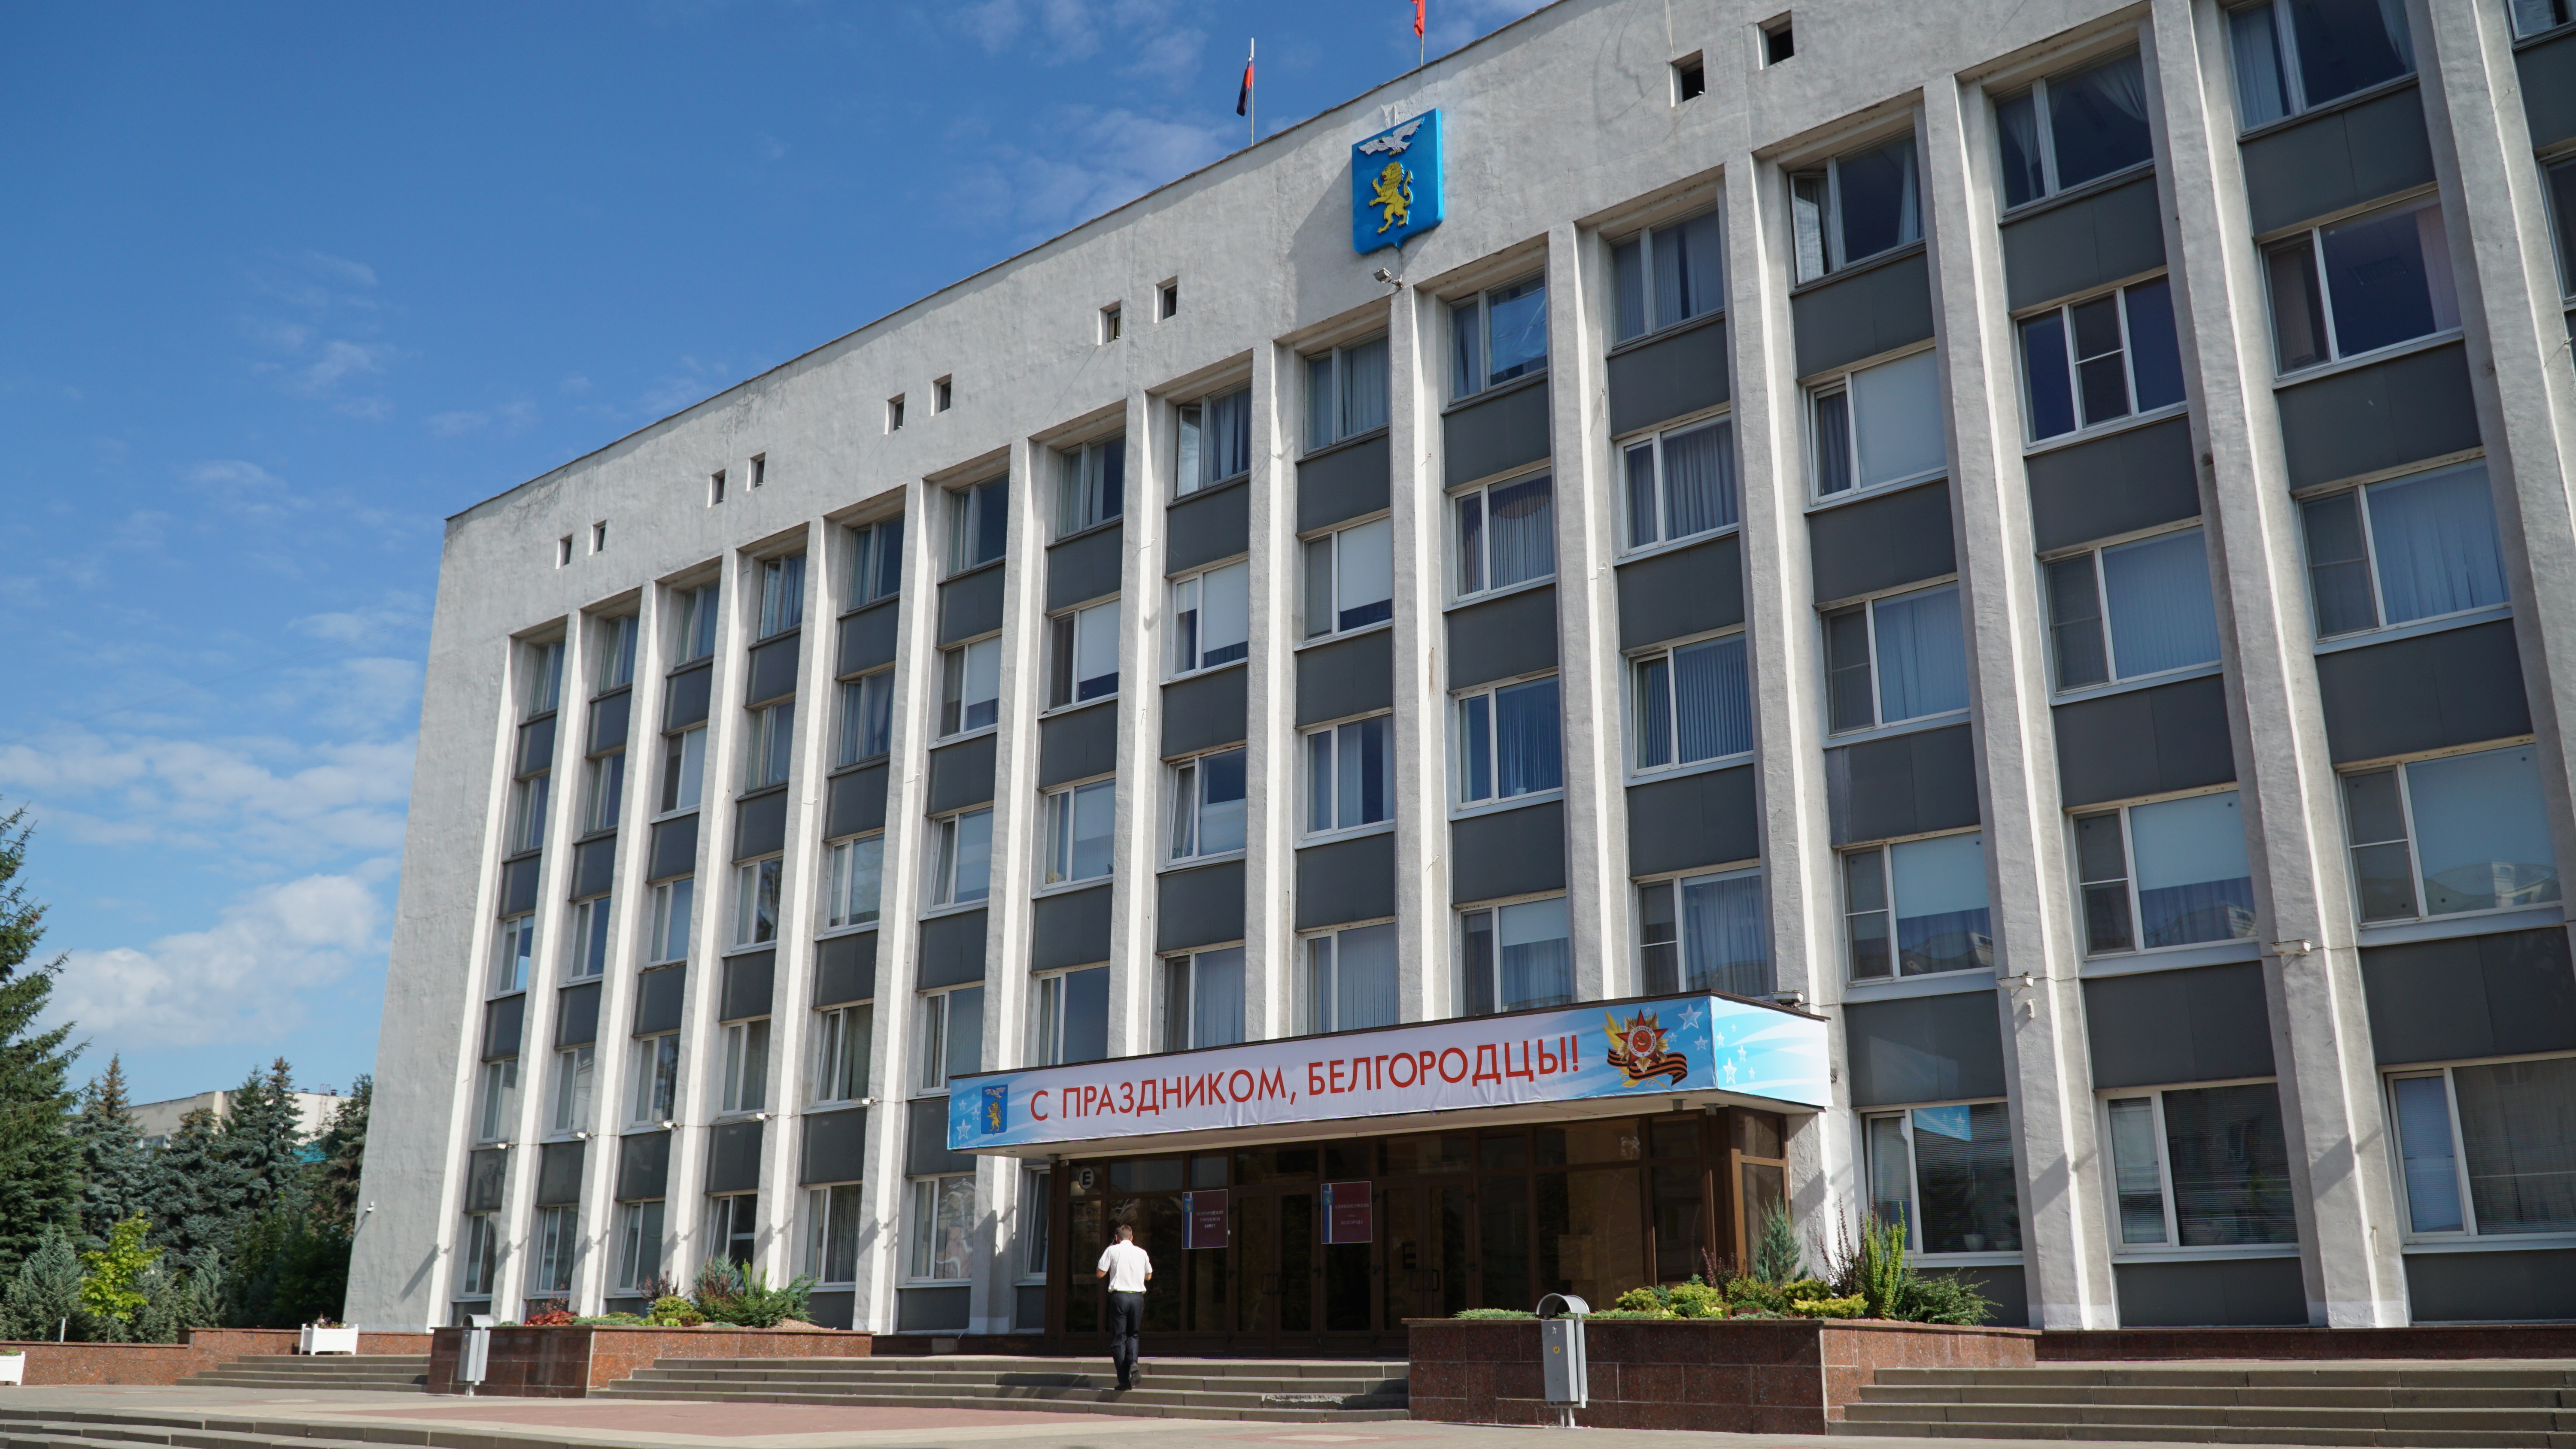 Главу 13 правил благоустройства Белгорода изменят по требованию прокуратуры